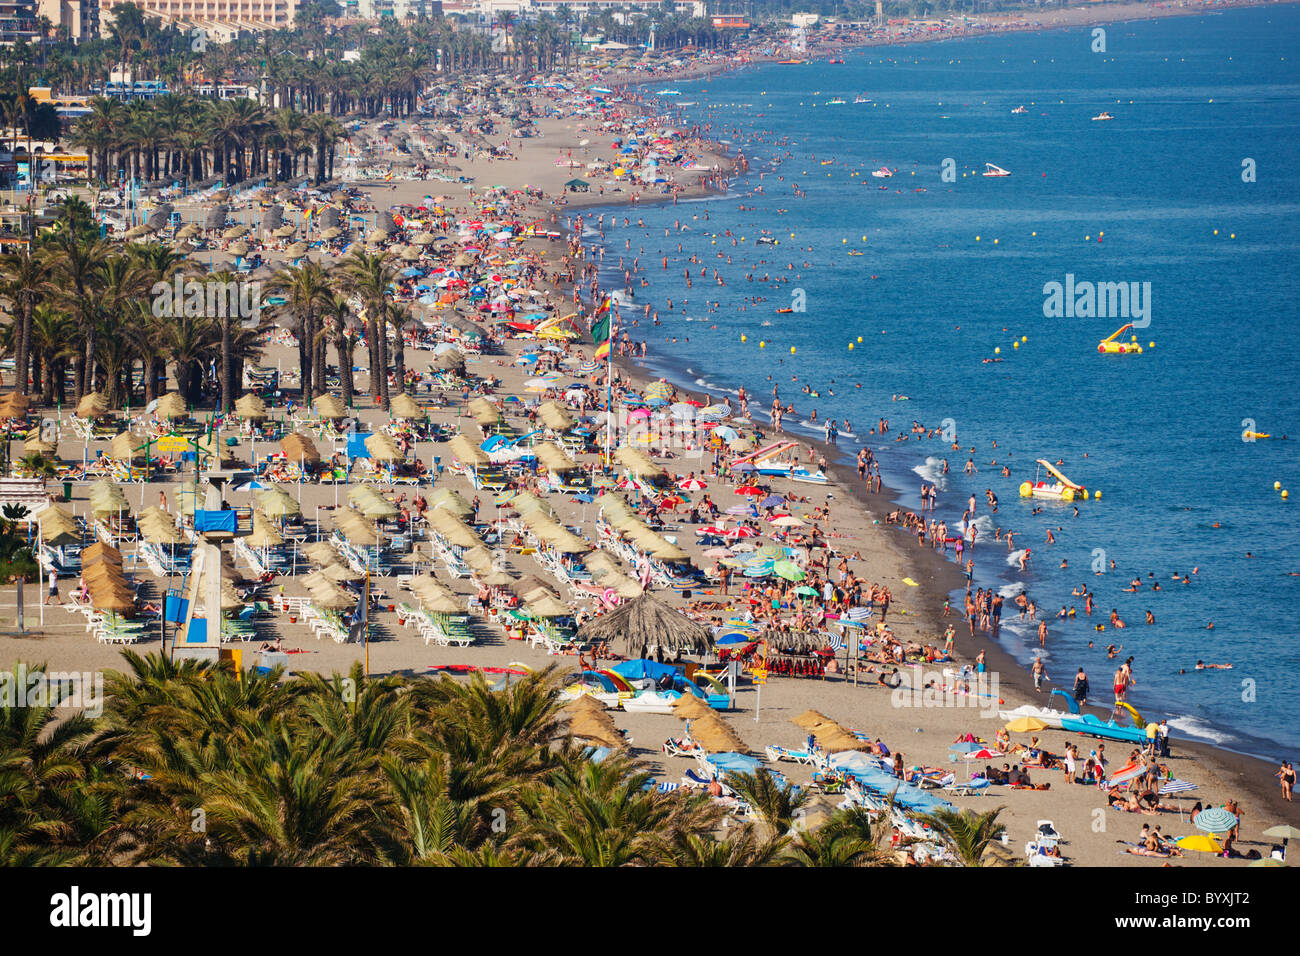 De la plage playamar bajondillo ; Torremolinos, Malaga, Andalousie, espagne Banque D'Images